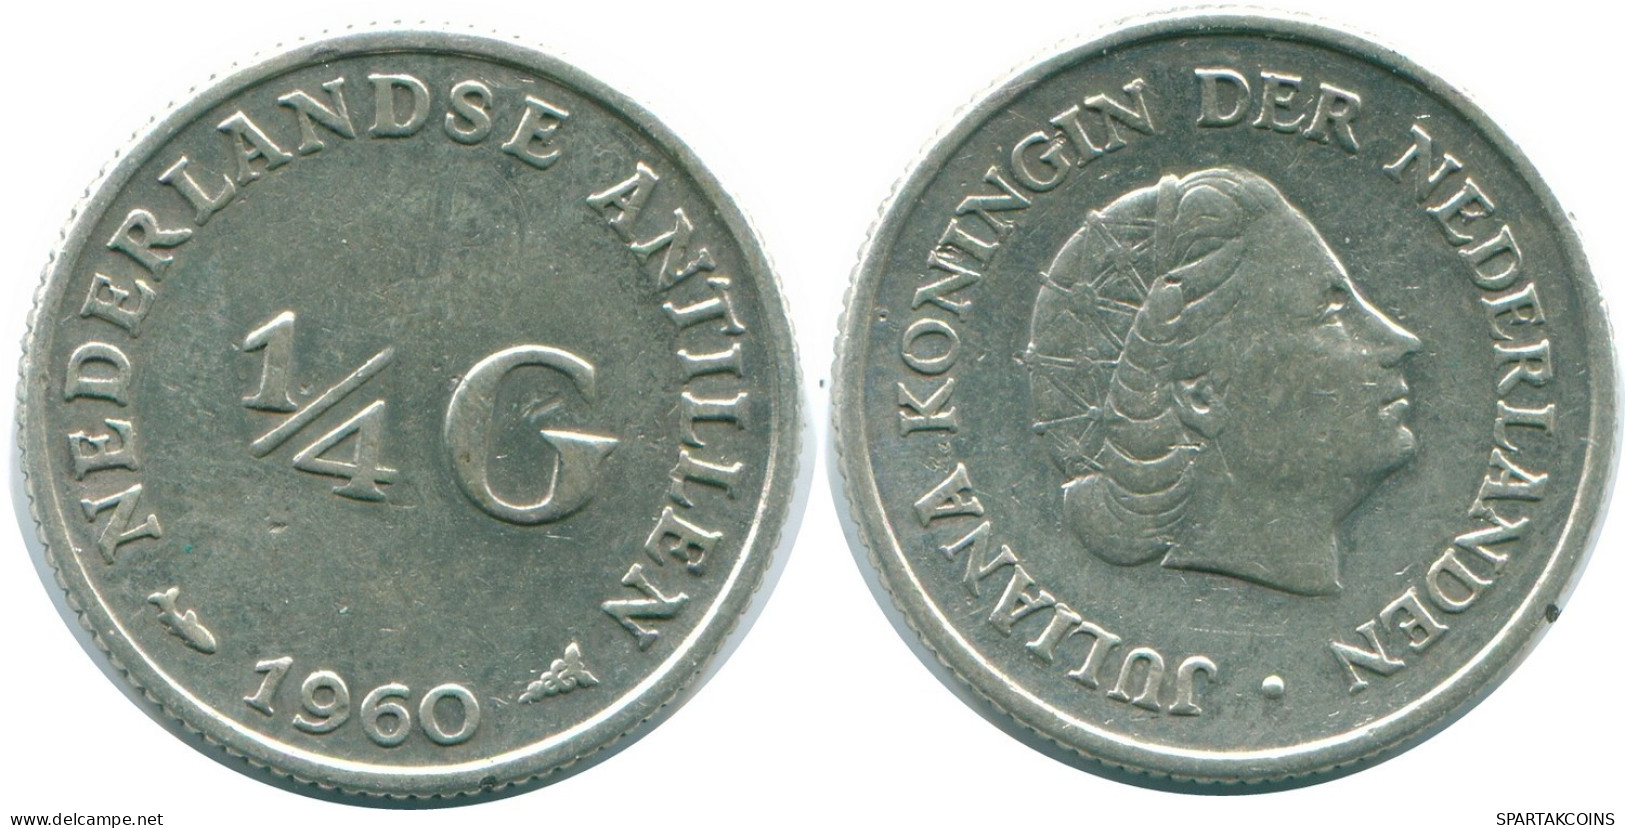 1/4 GULDEN 1960 NIEDERLÄNDISCHE ANTILLEN SILBER Koloniale Münze #NL11046.4.D.A - Antilles Néerlandaises